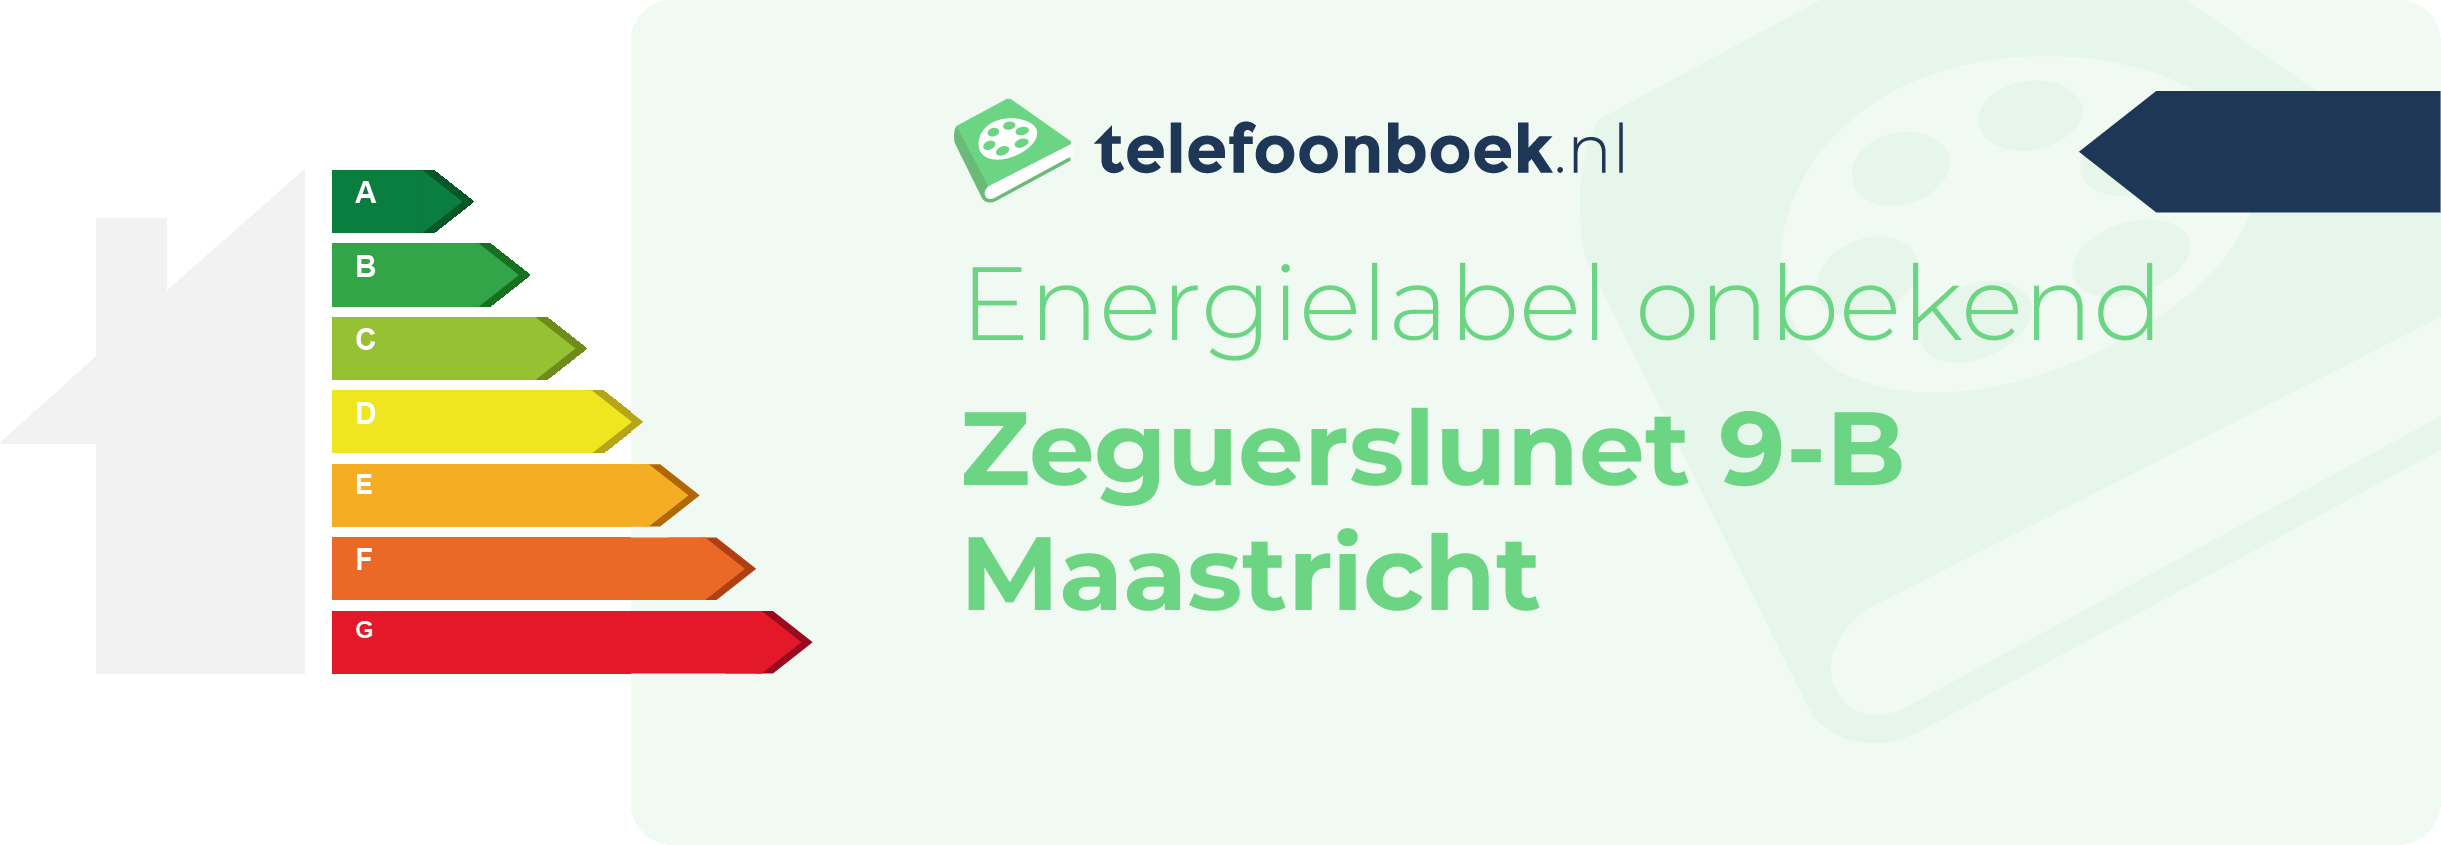 Energielabel Zeguerslunet 9-B Maastricht